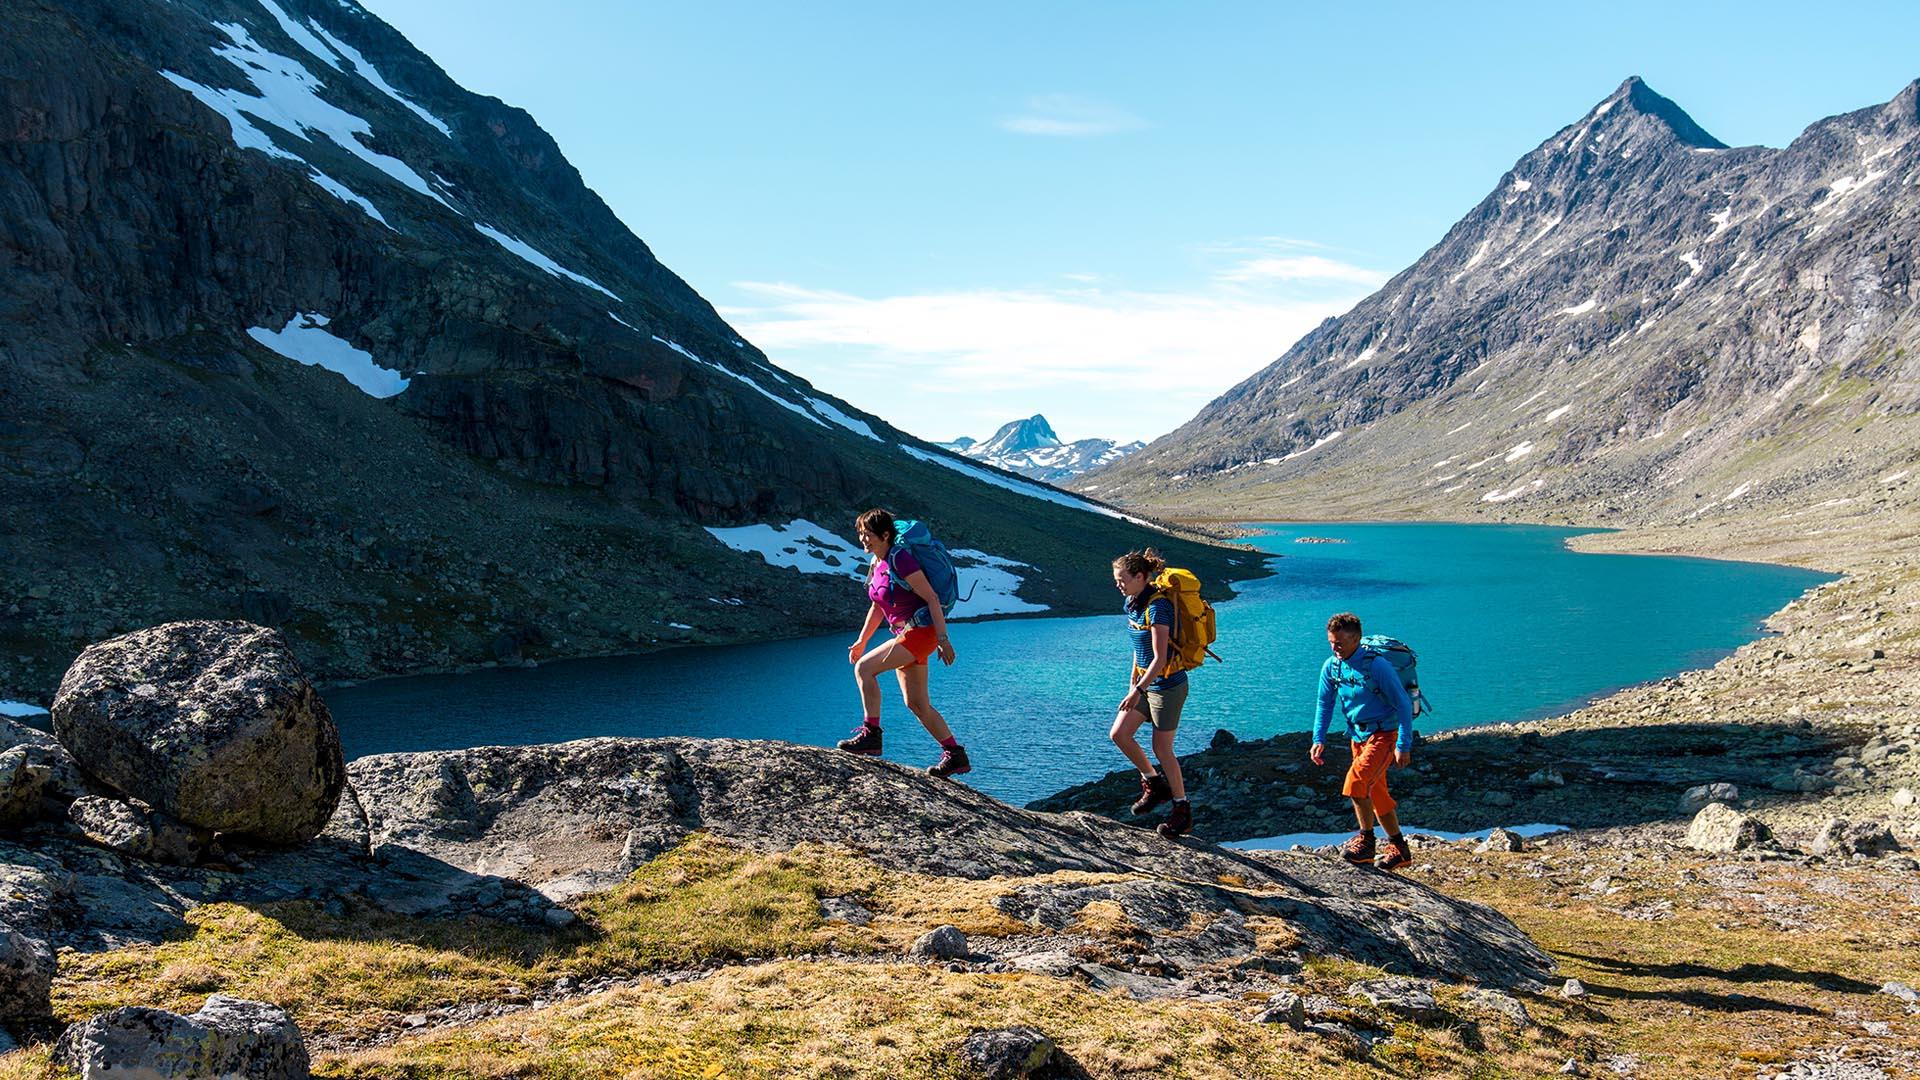 Drei Wanderer in Sommerkleidung und mit Rucksäcken in einem Tal im Hochgebirge mit einem See und hohen, spitzen Bergen.